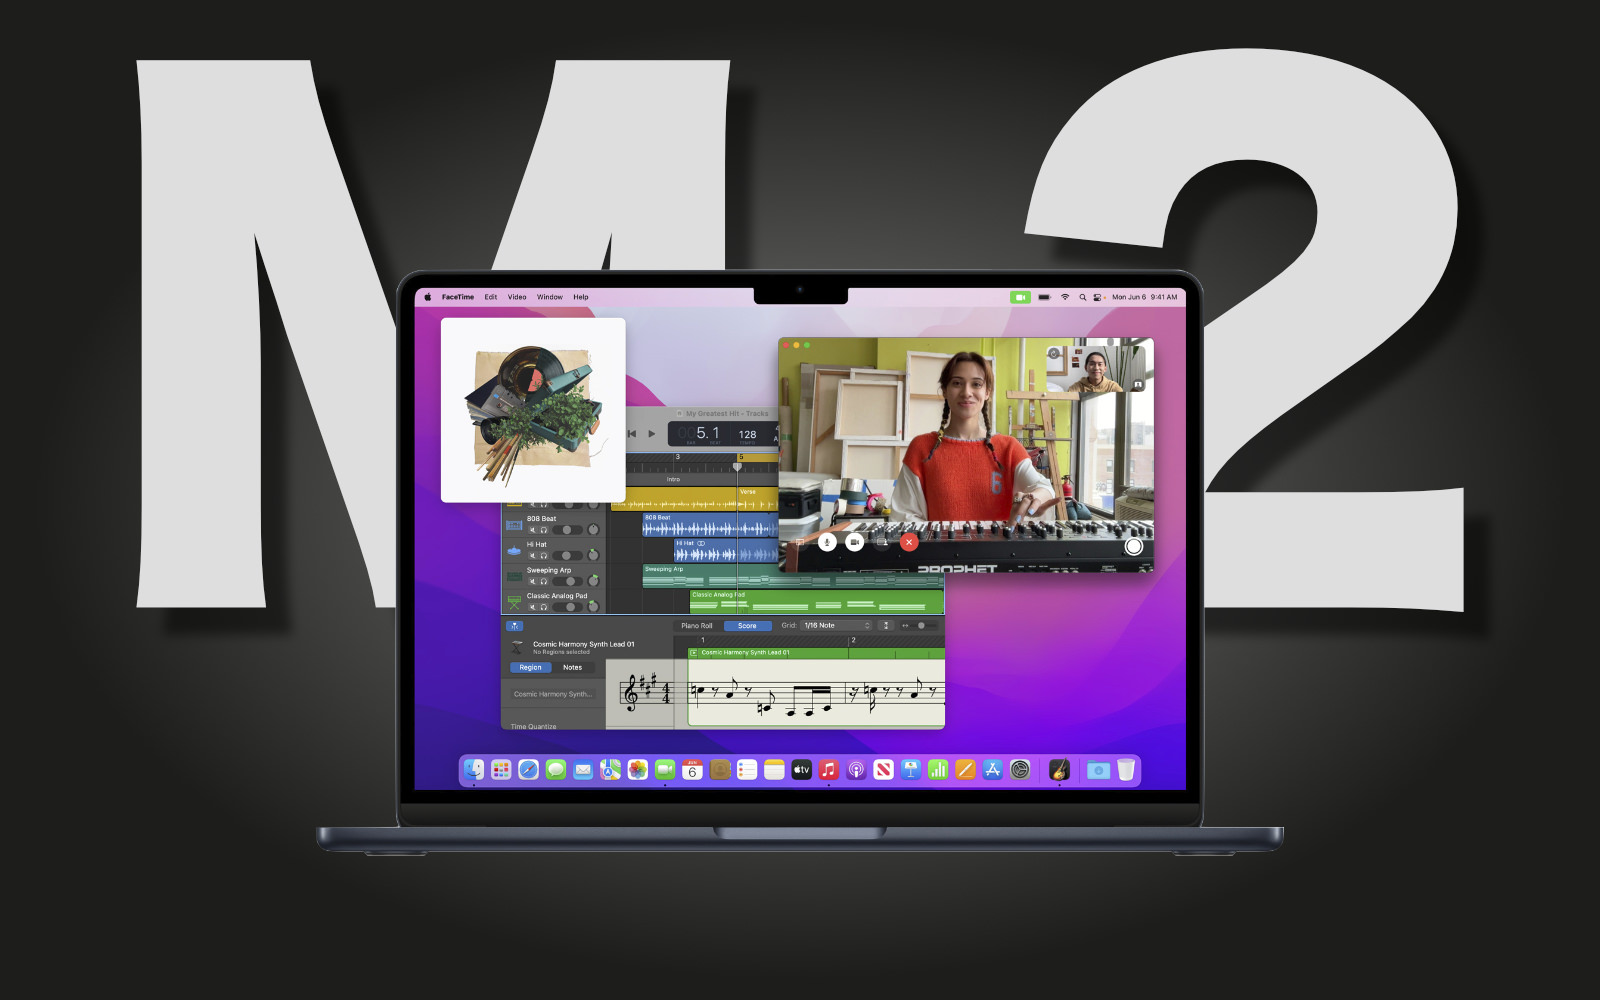 M2 macbook air image